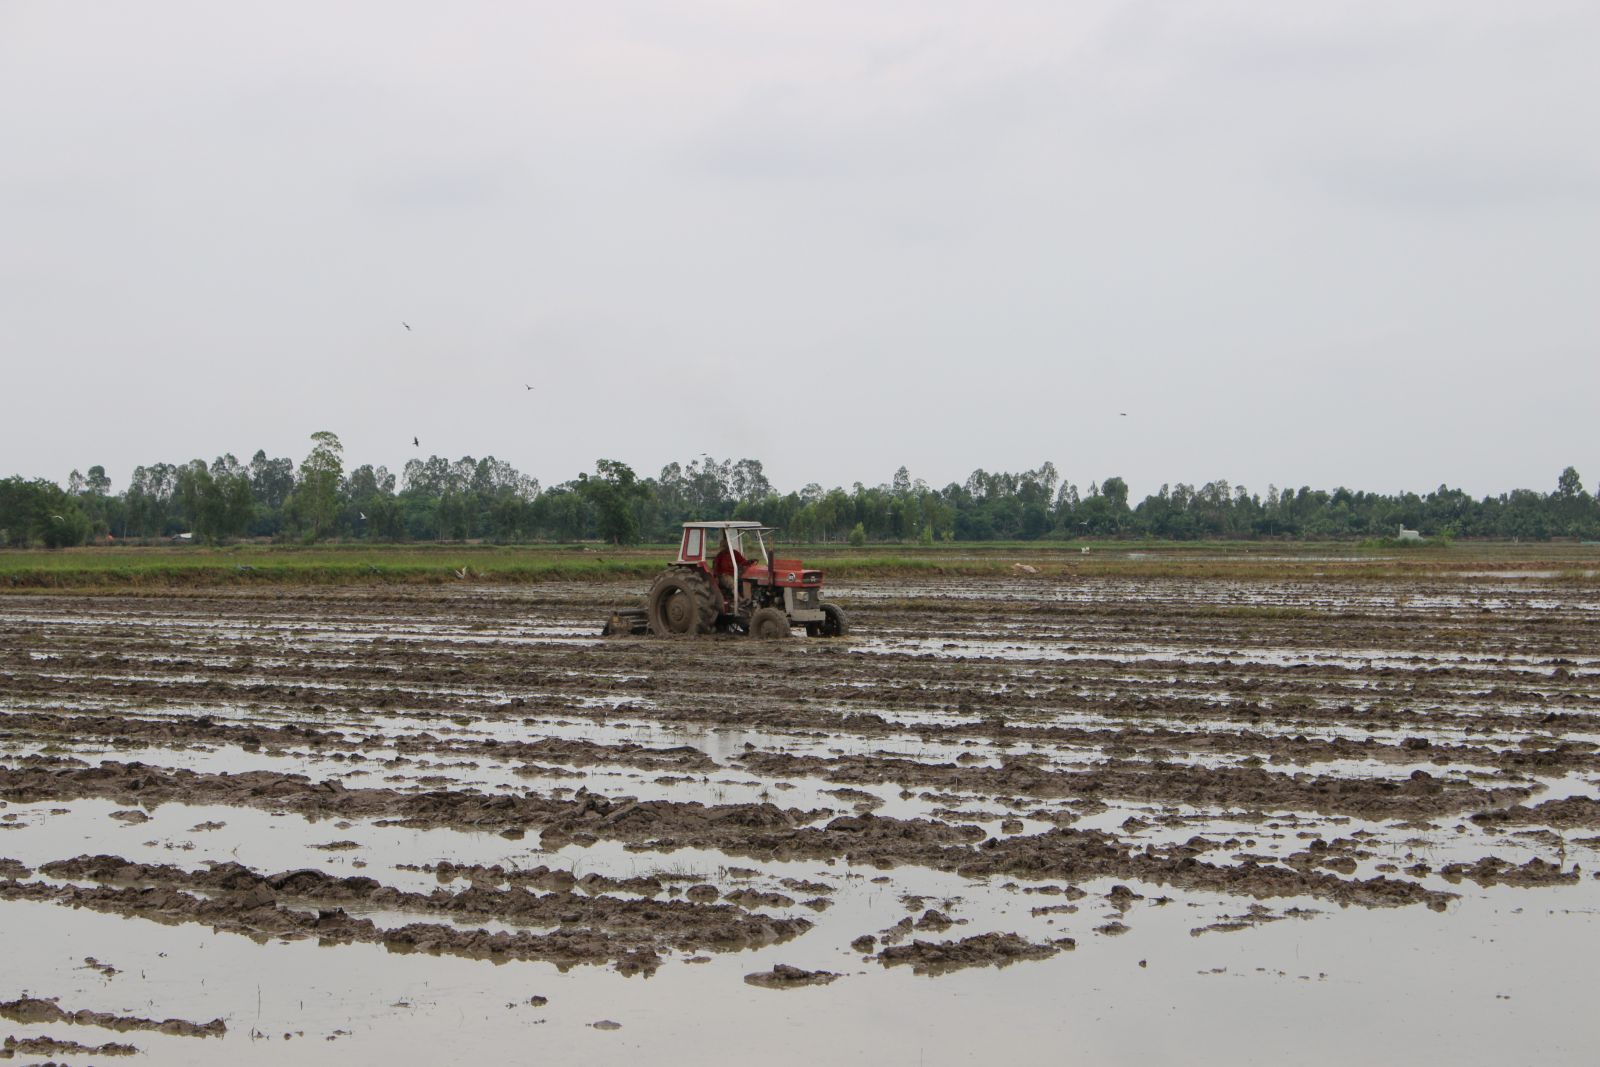 Nông dân cần vệ sinh đồng ruộng thật kỹ trước khi xuống giống vụ lúa Đông Xuân 2021-2022